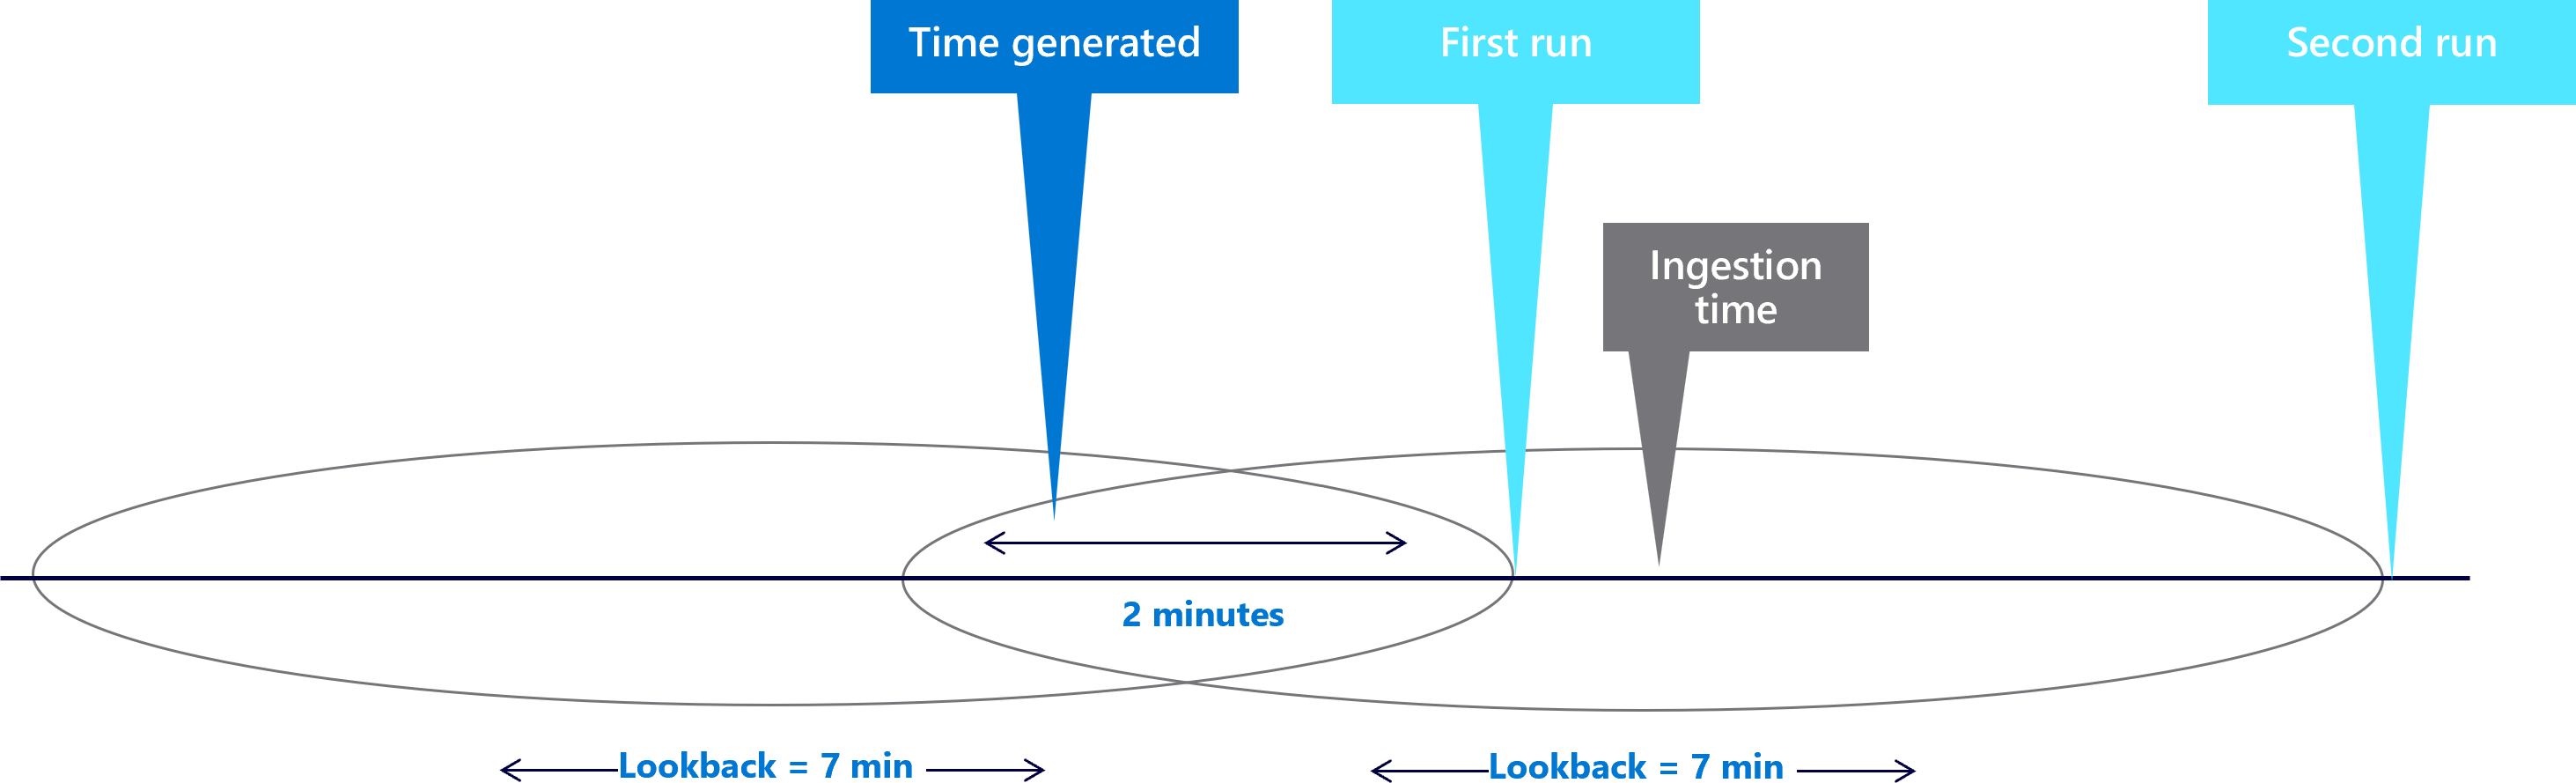 Diagrama mostrando janelas de retorno de sete minutos com um atraso de dois minutos.